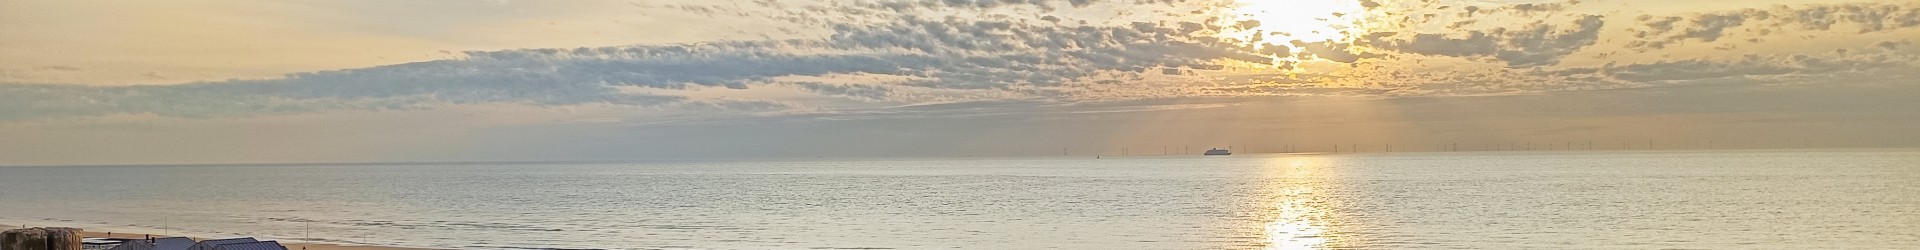 Herfst uitzicht Egmond aan Zee 2